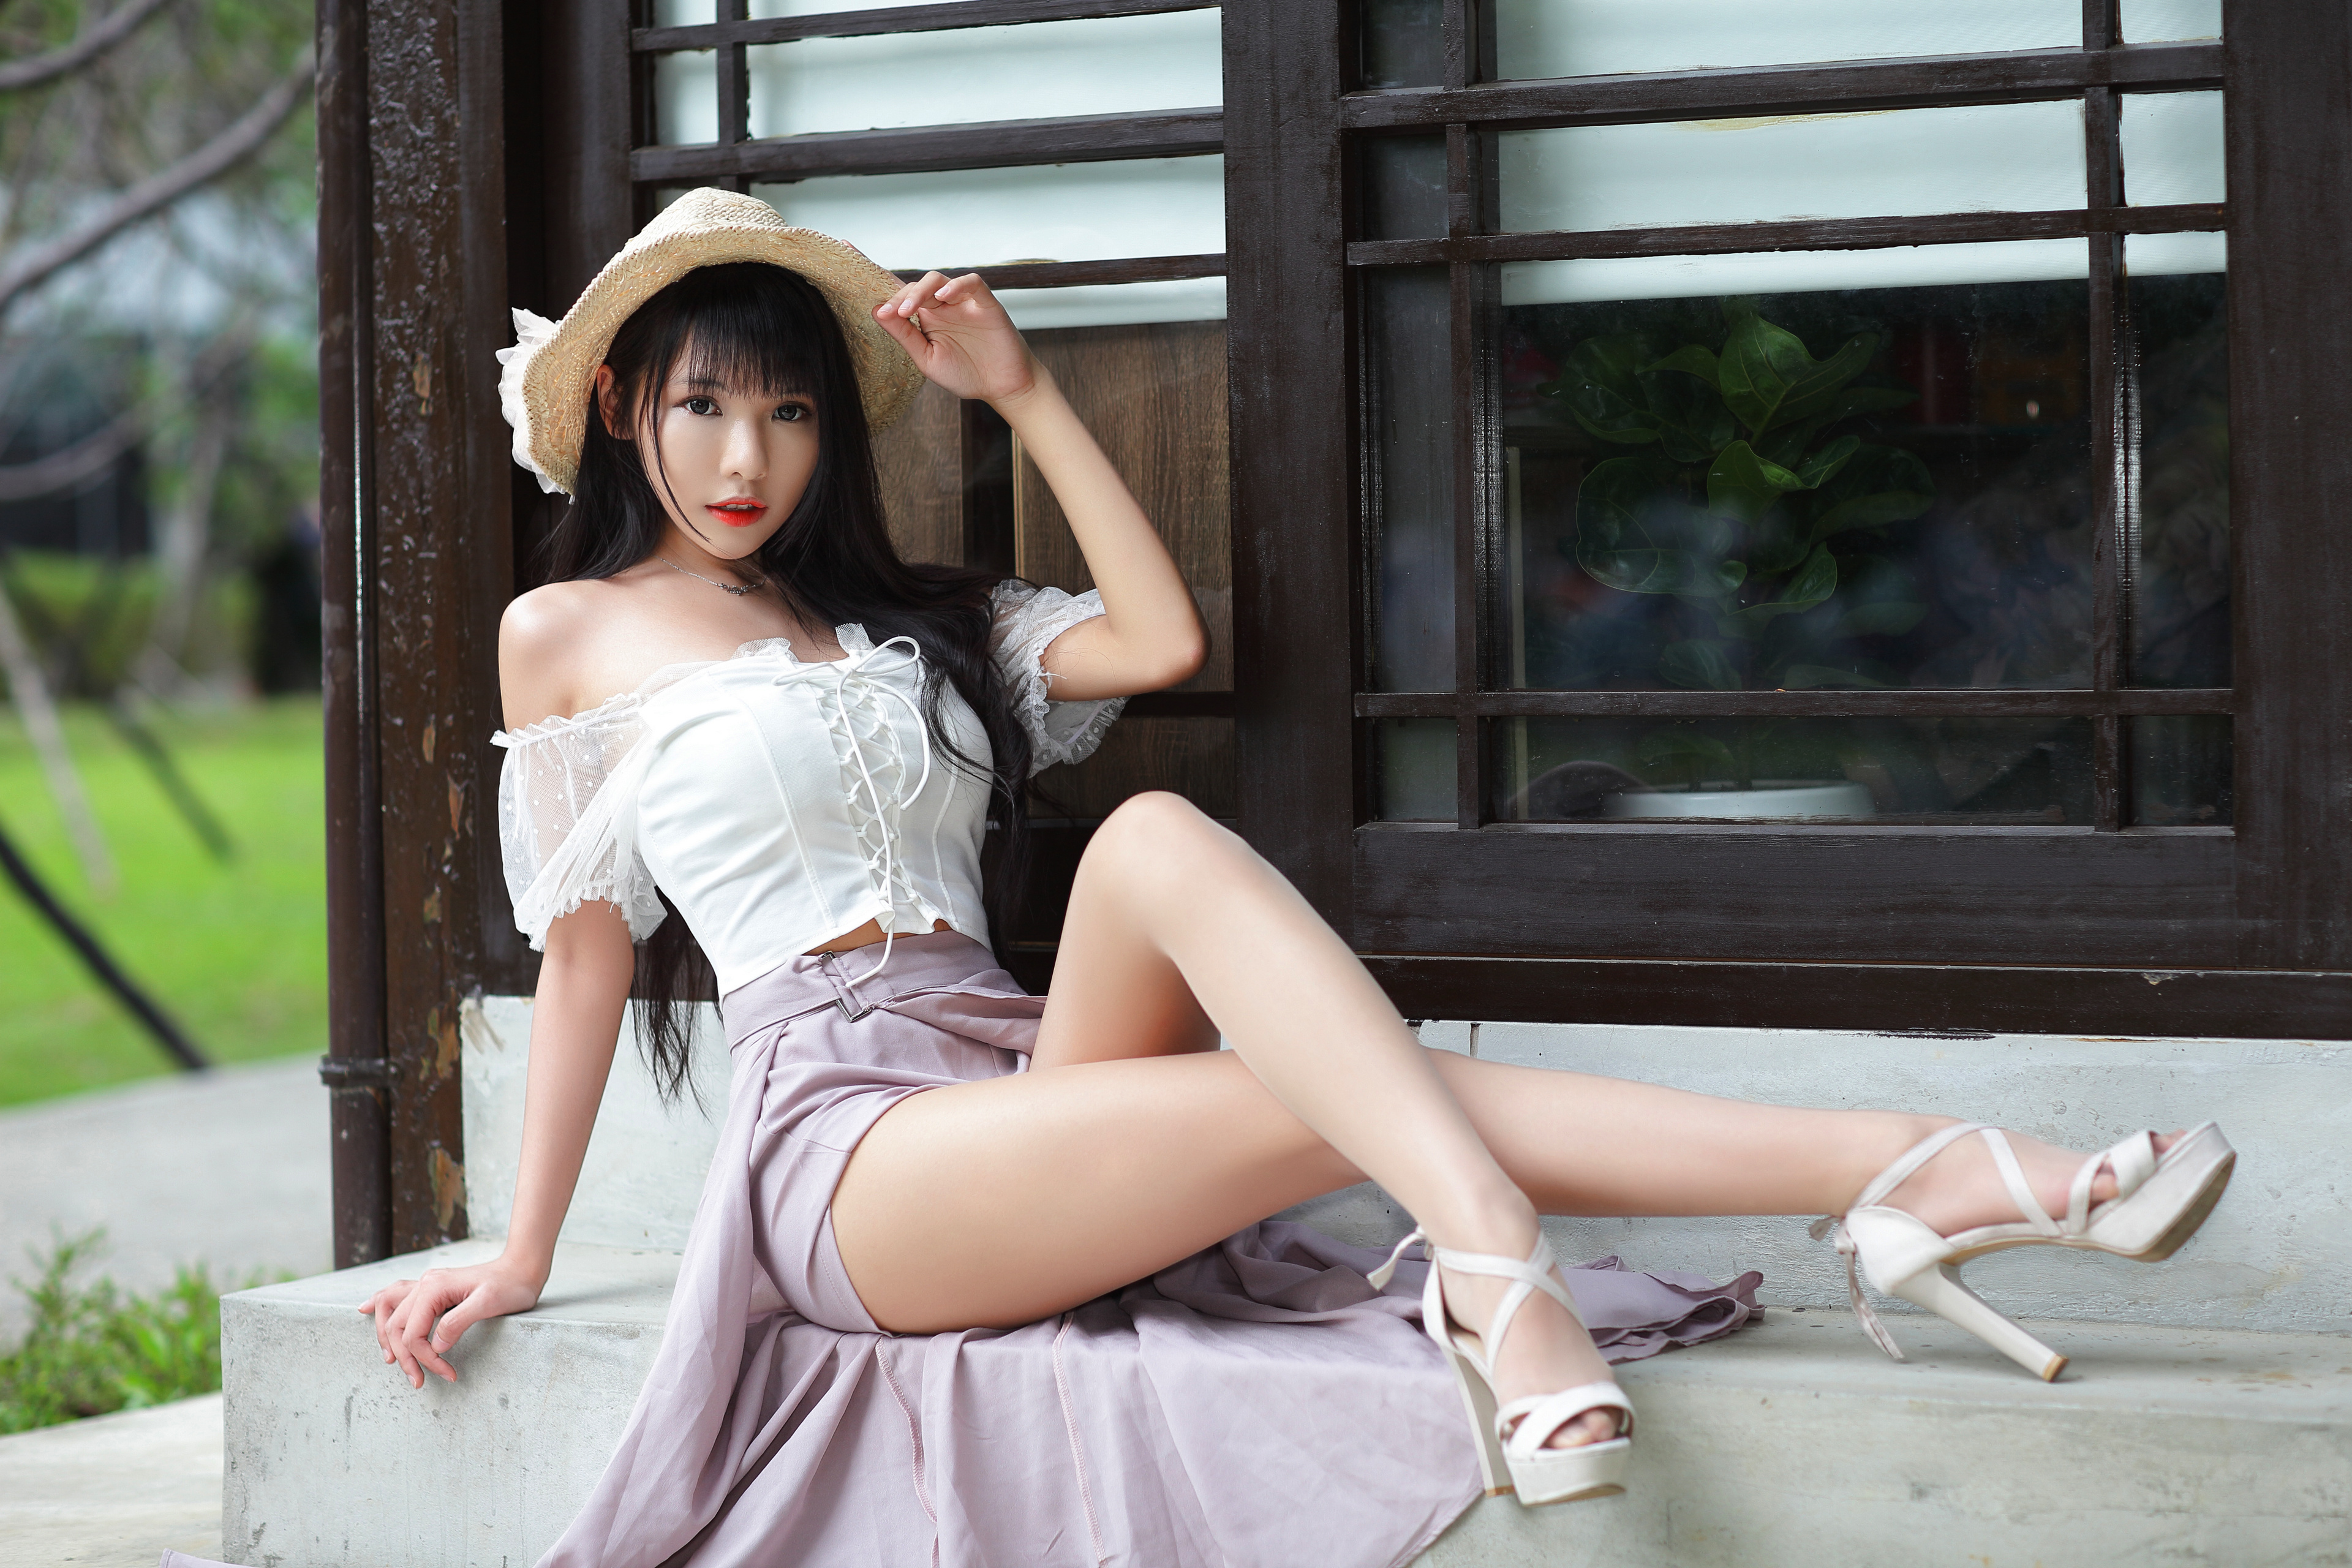 People 3840x2560 Asian women model brunette sitting white tops straw hat grass window Vicky (Asian model) legs heels black hair